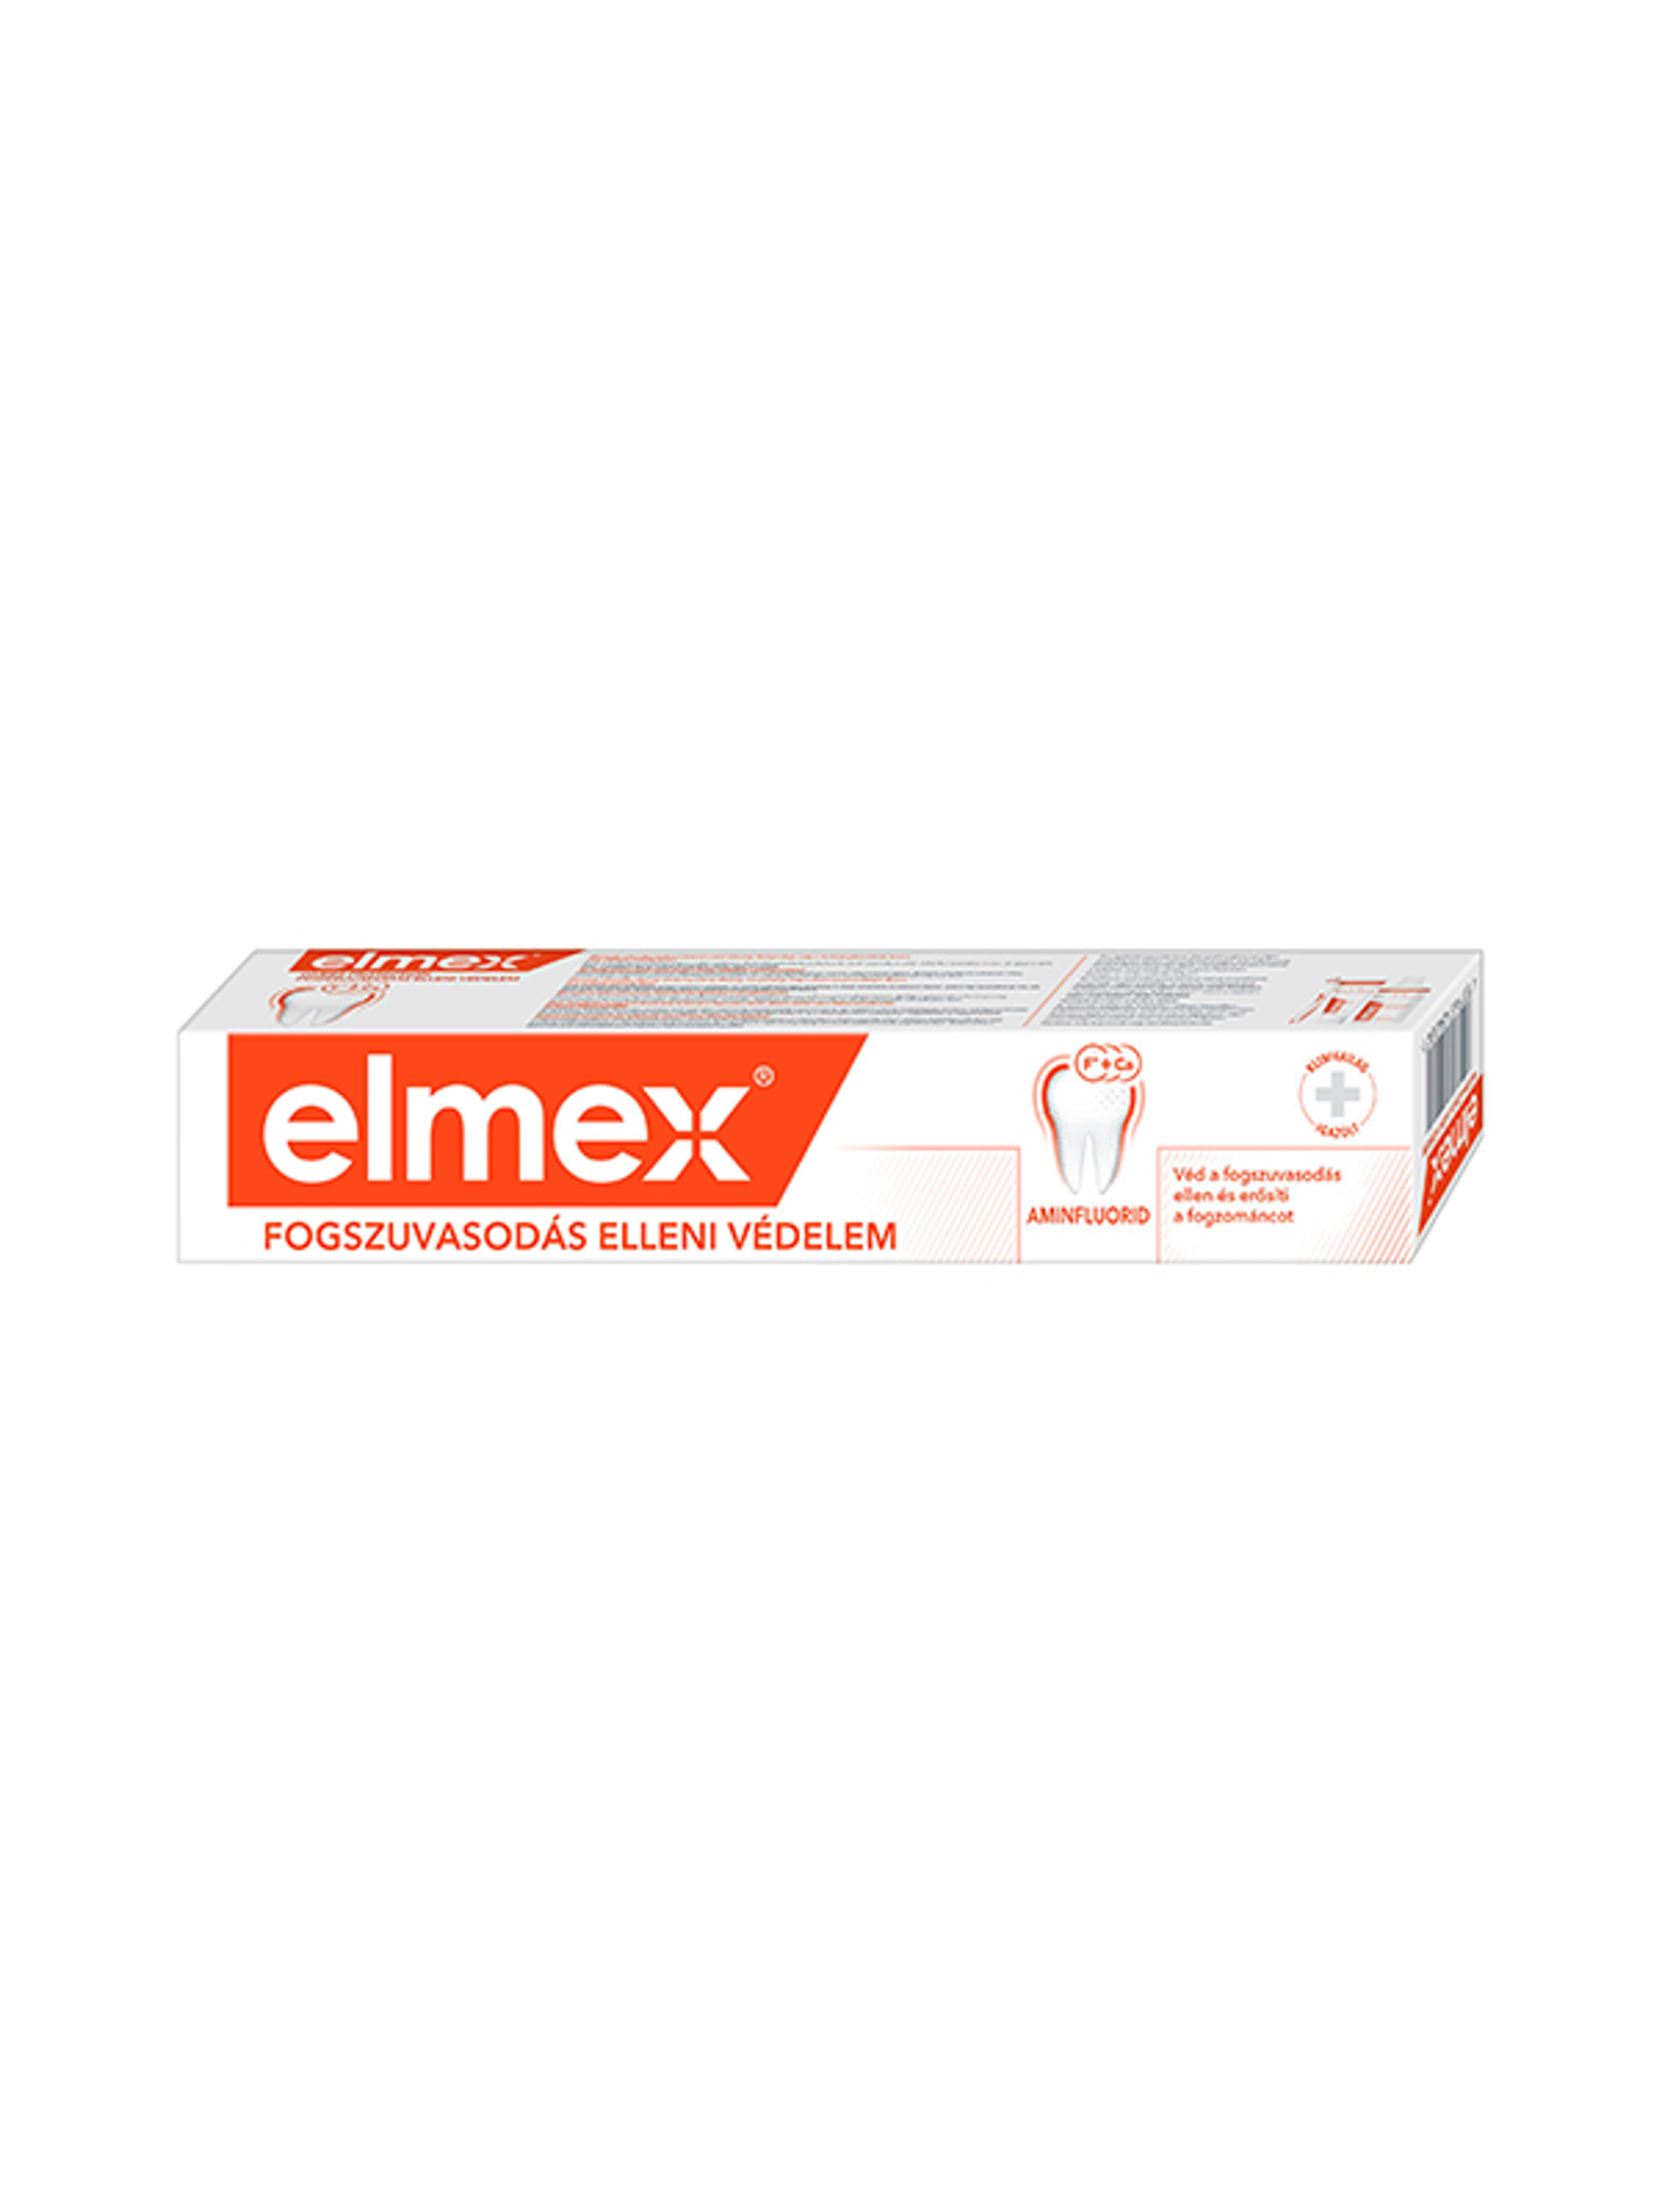 Elmex Caries Protection fogszuvasodás elleni fogkrém aminfluoriddal - 75 ml-2